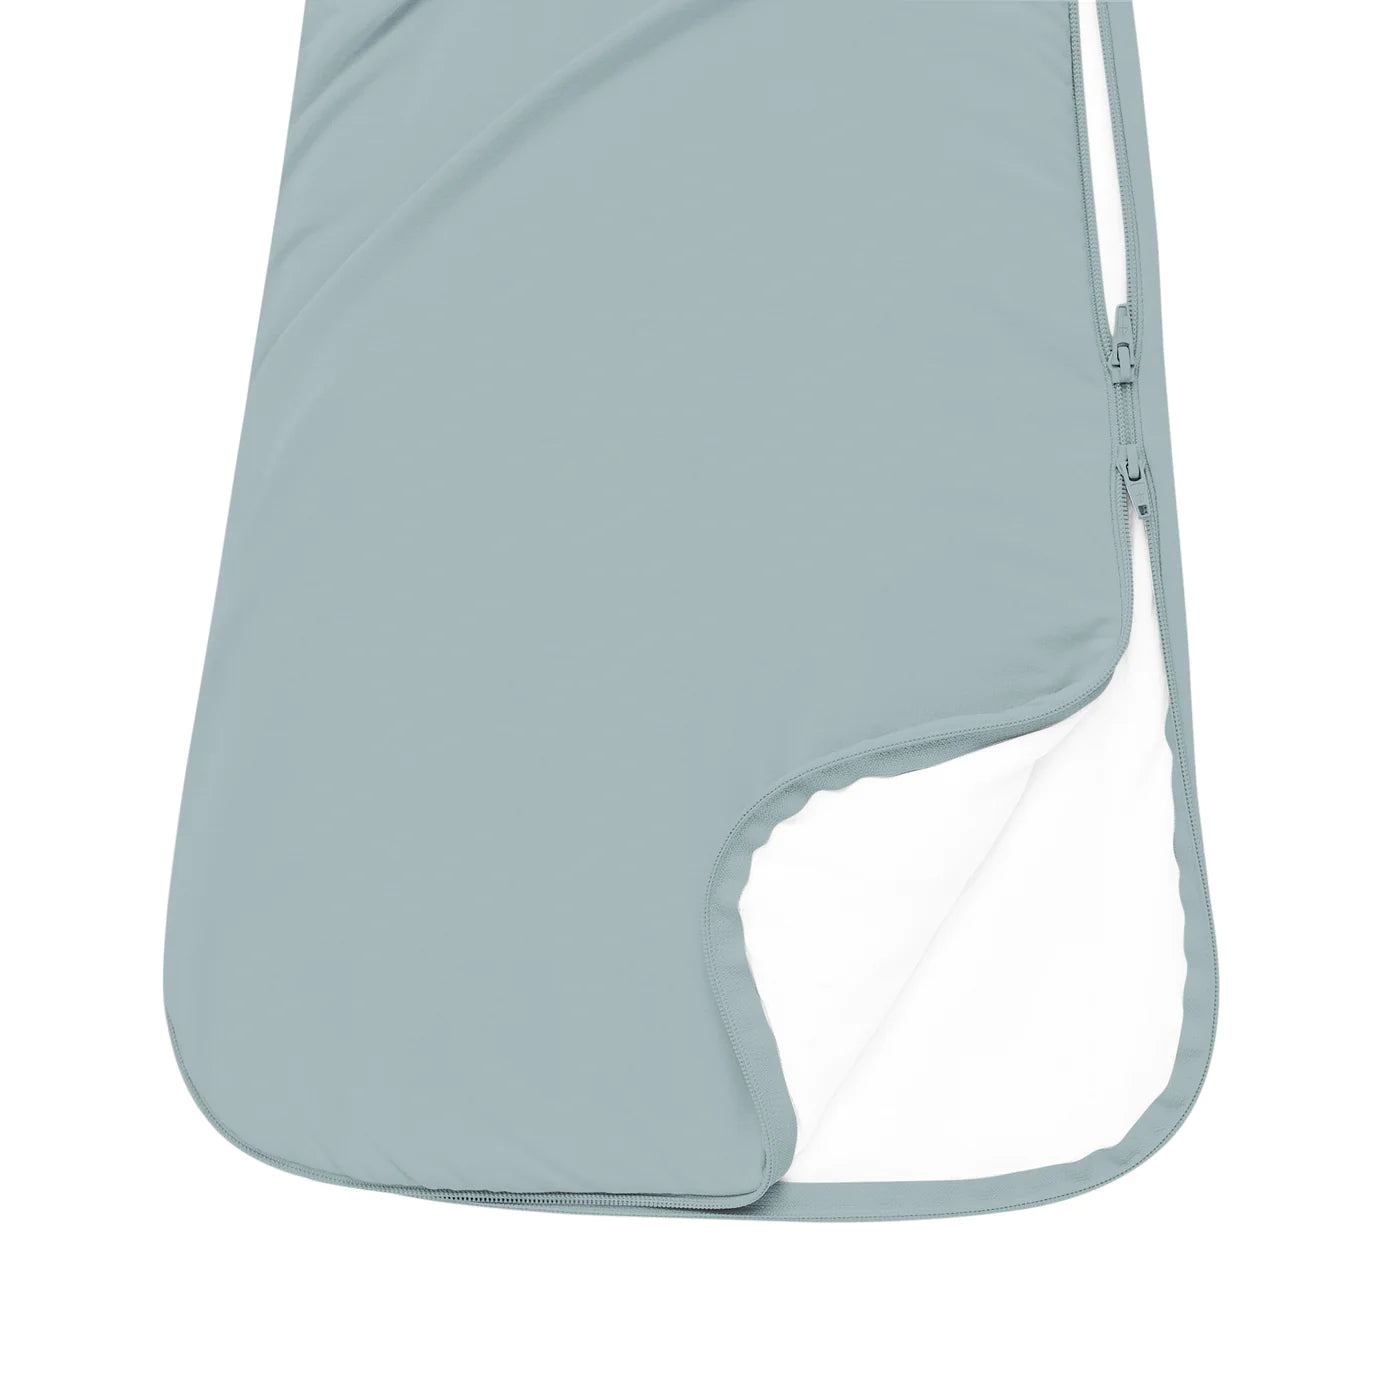 Kyte Baby - 1.0 Tog Sleep Bag - Glacier